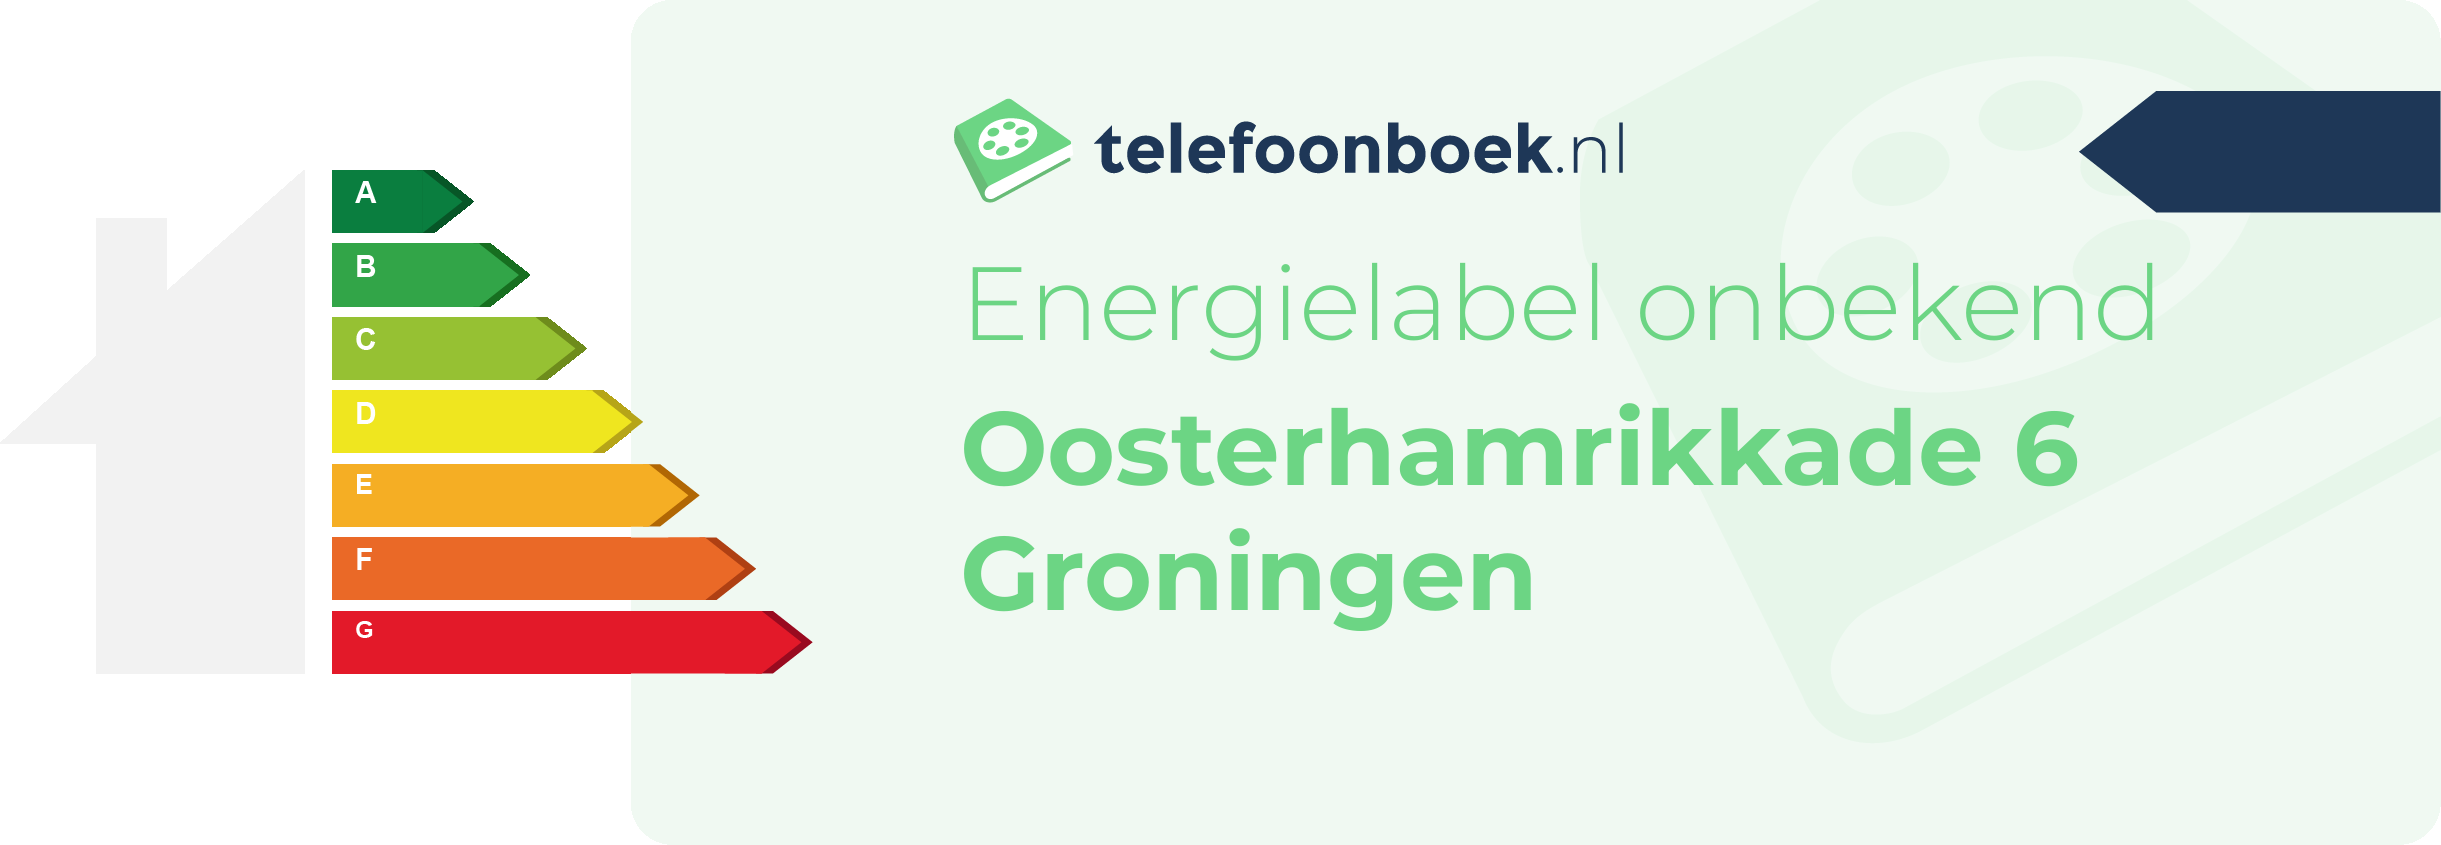 Energielabel Oosterhamrikkade 6 Groningen